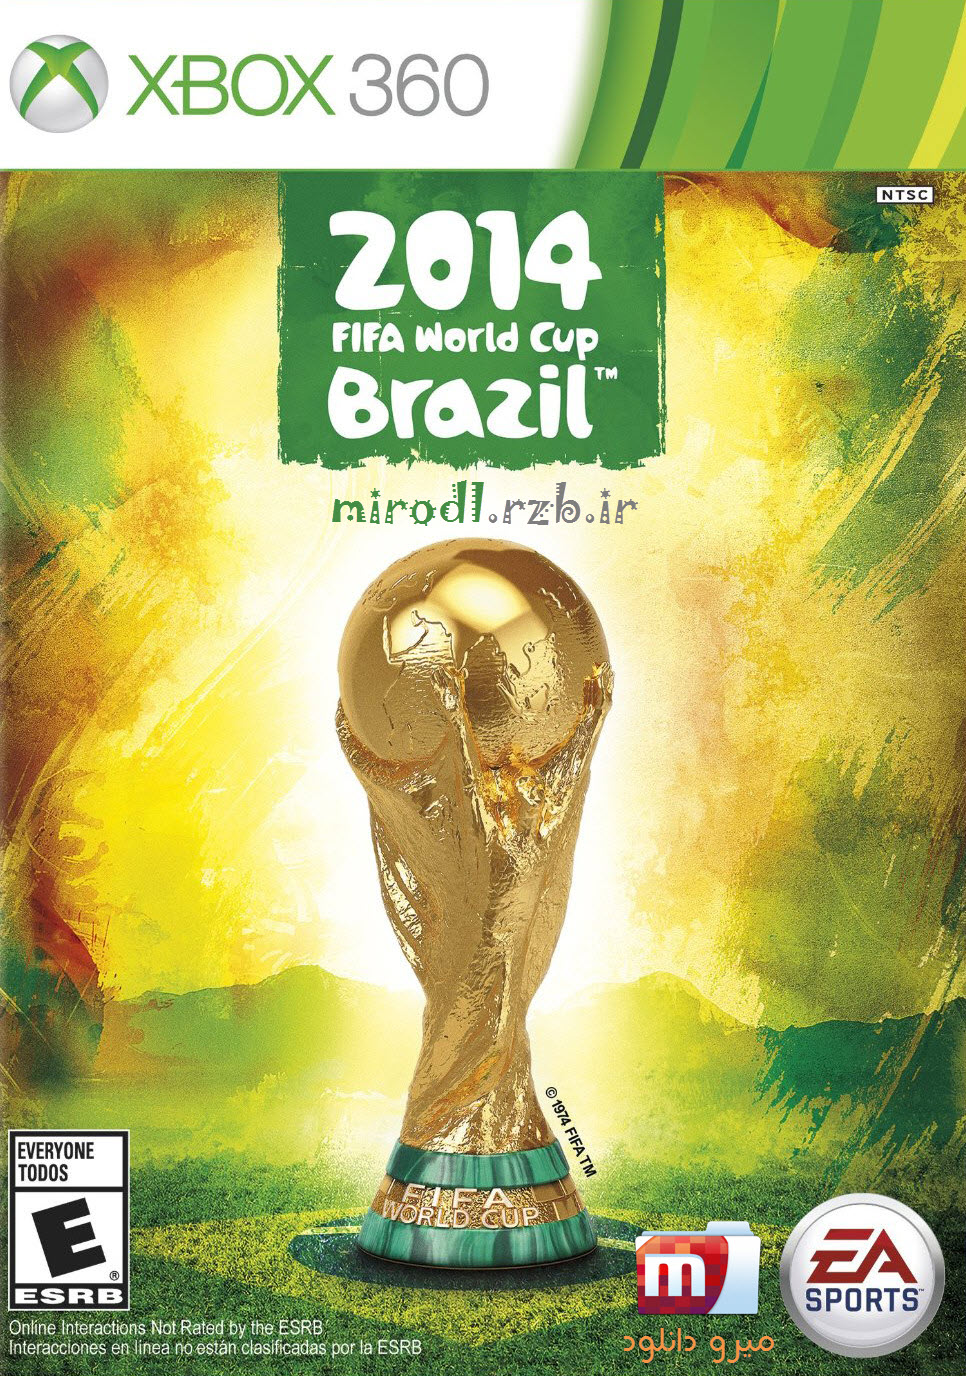  دانلود بازی ۲۰۱۴ FIFA World Cup Brazil برای XBOX360 